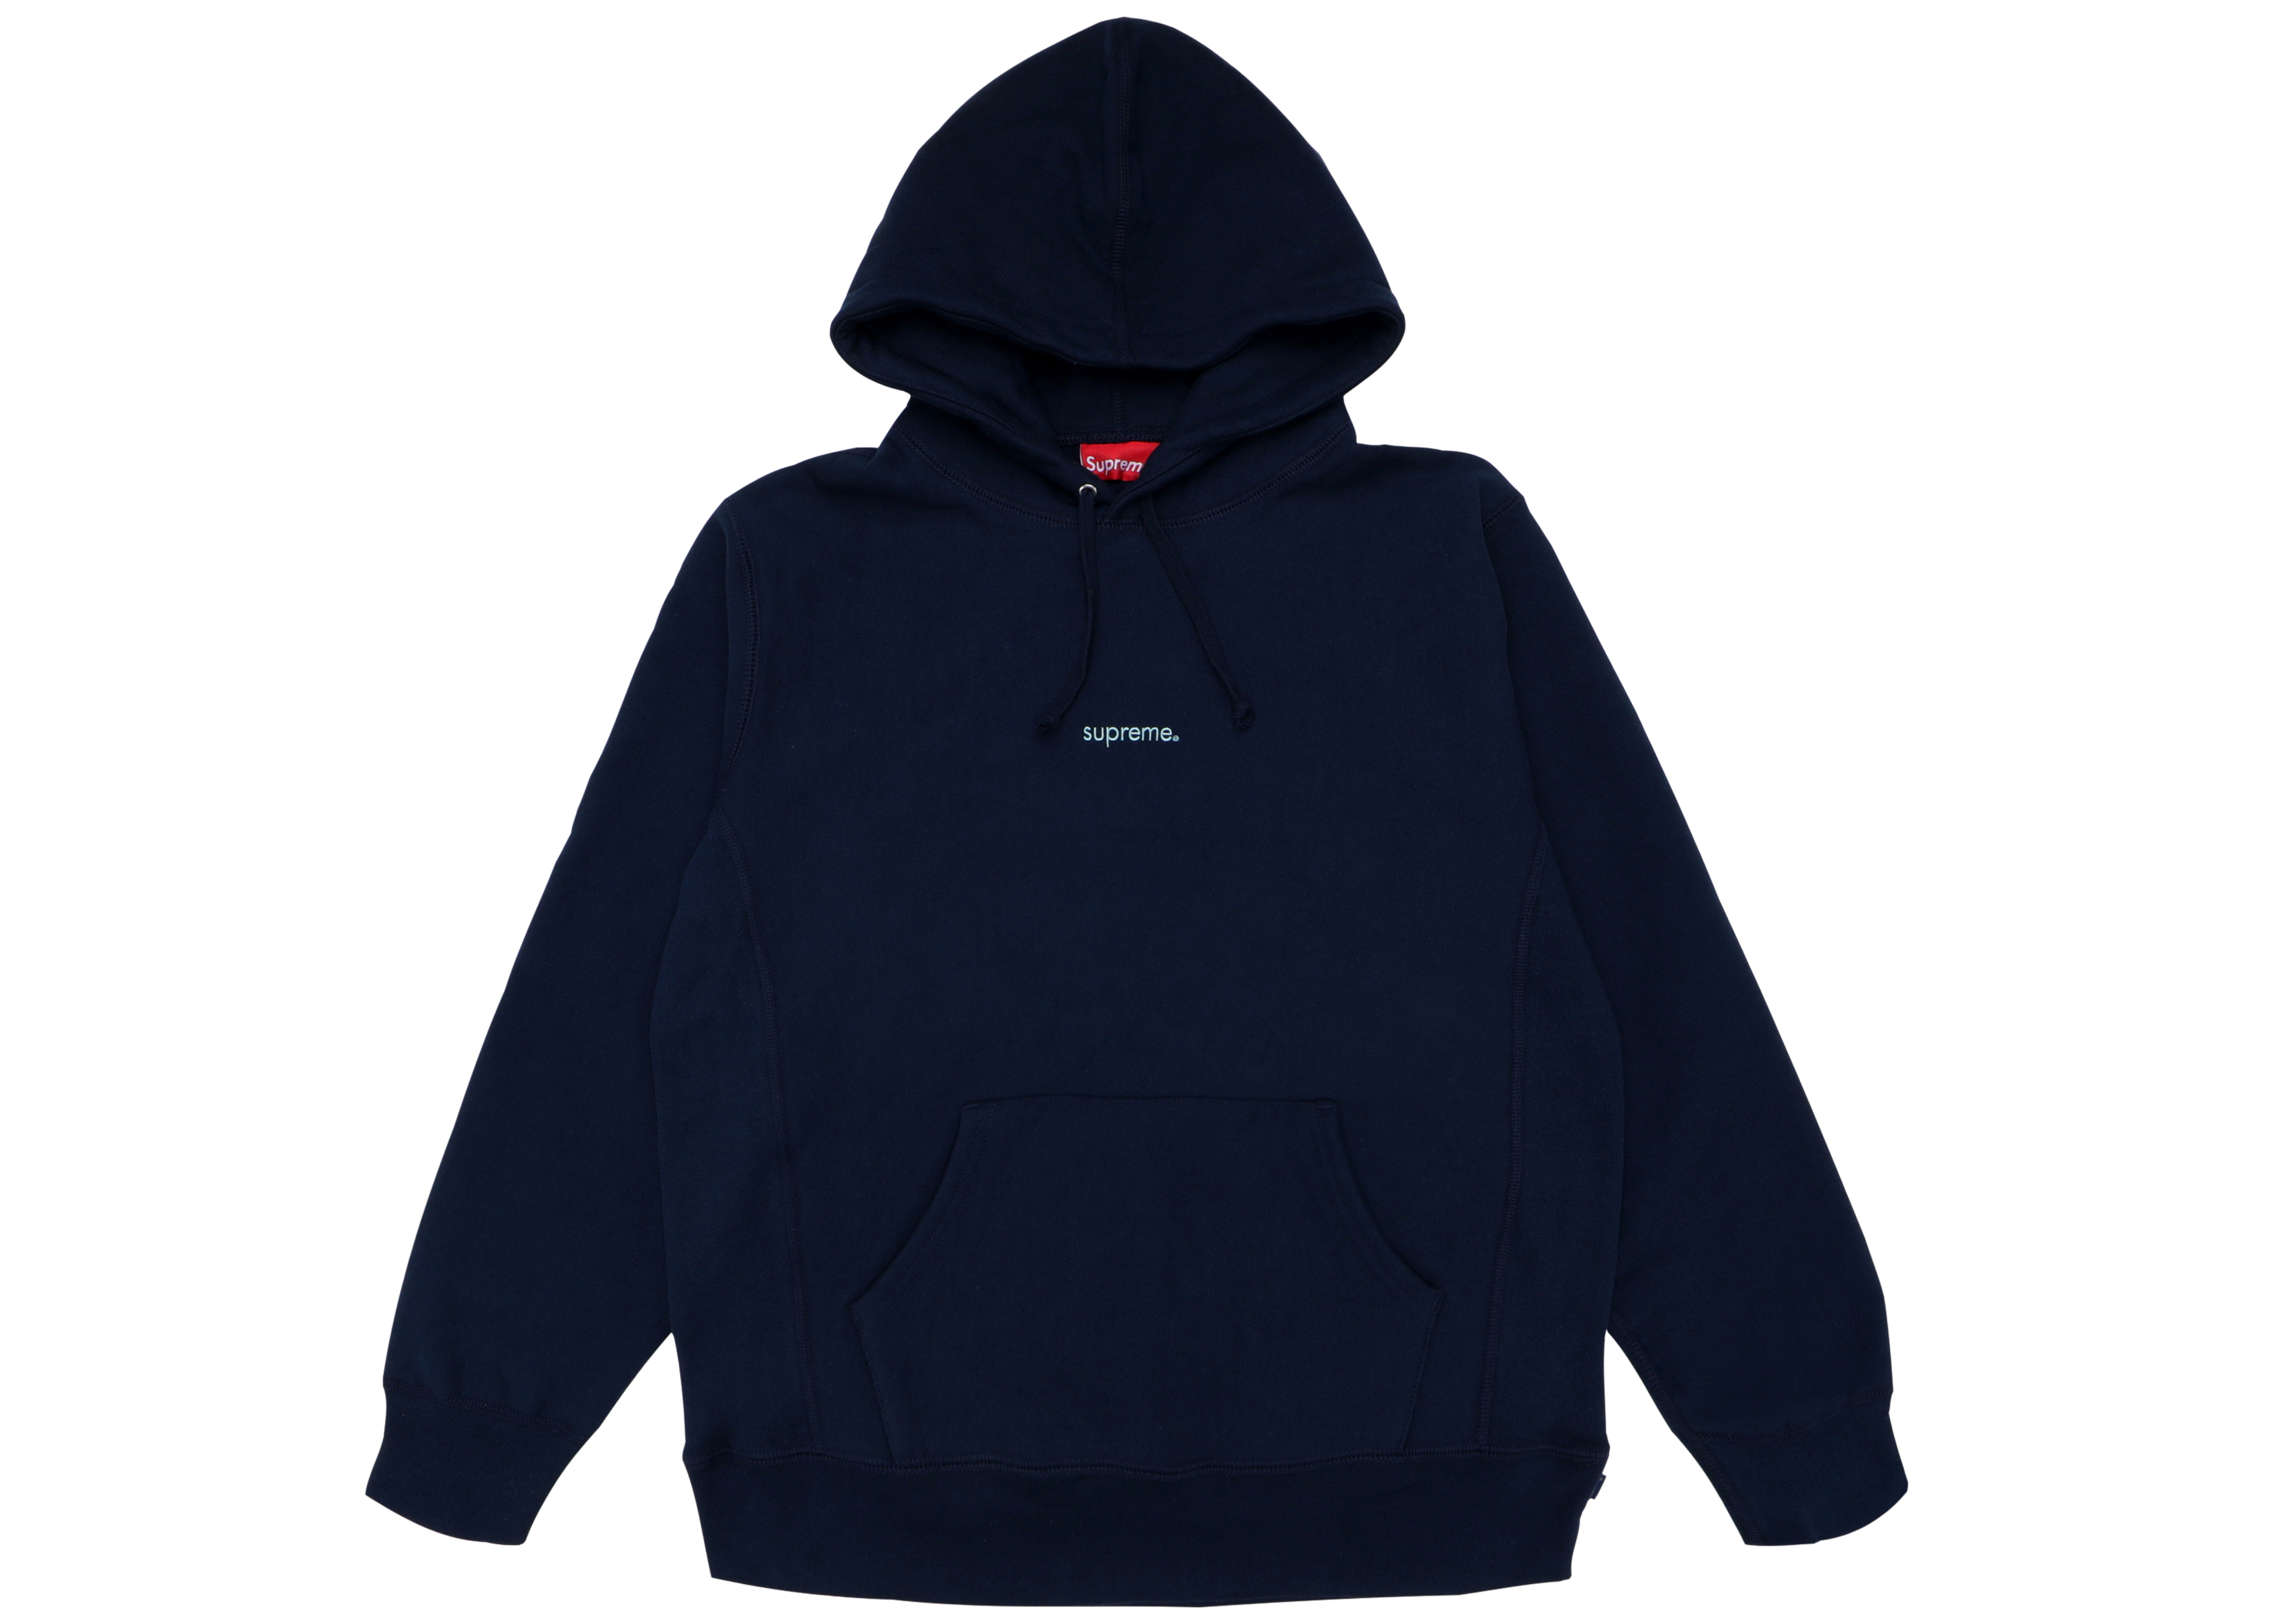 Supreme trademark hooded sweatshirt